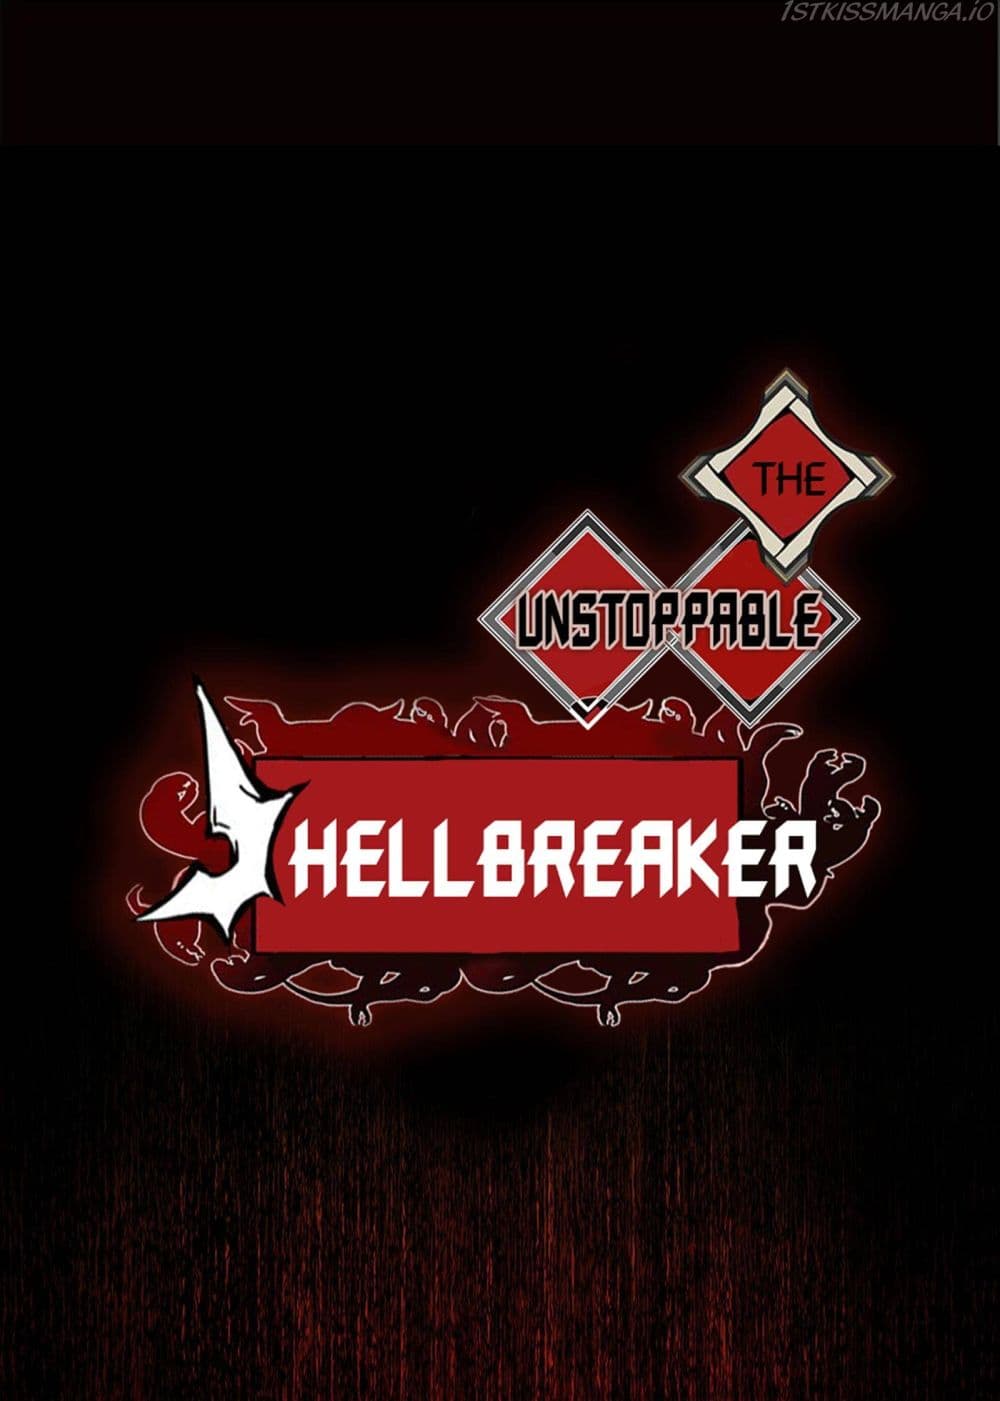 The Unstoppable Hellbreaker 20-20